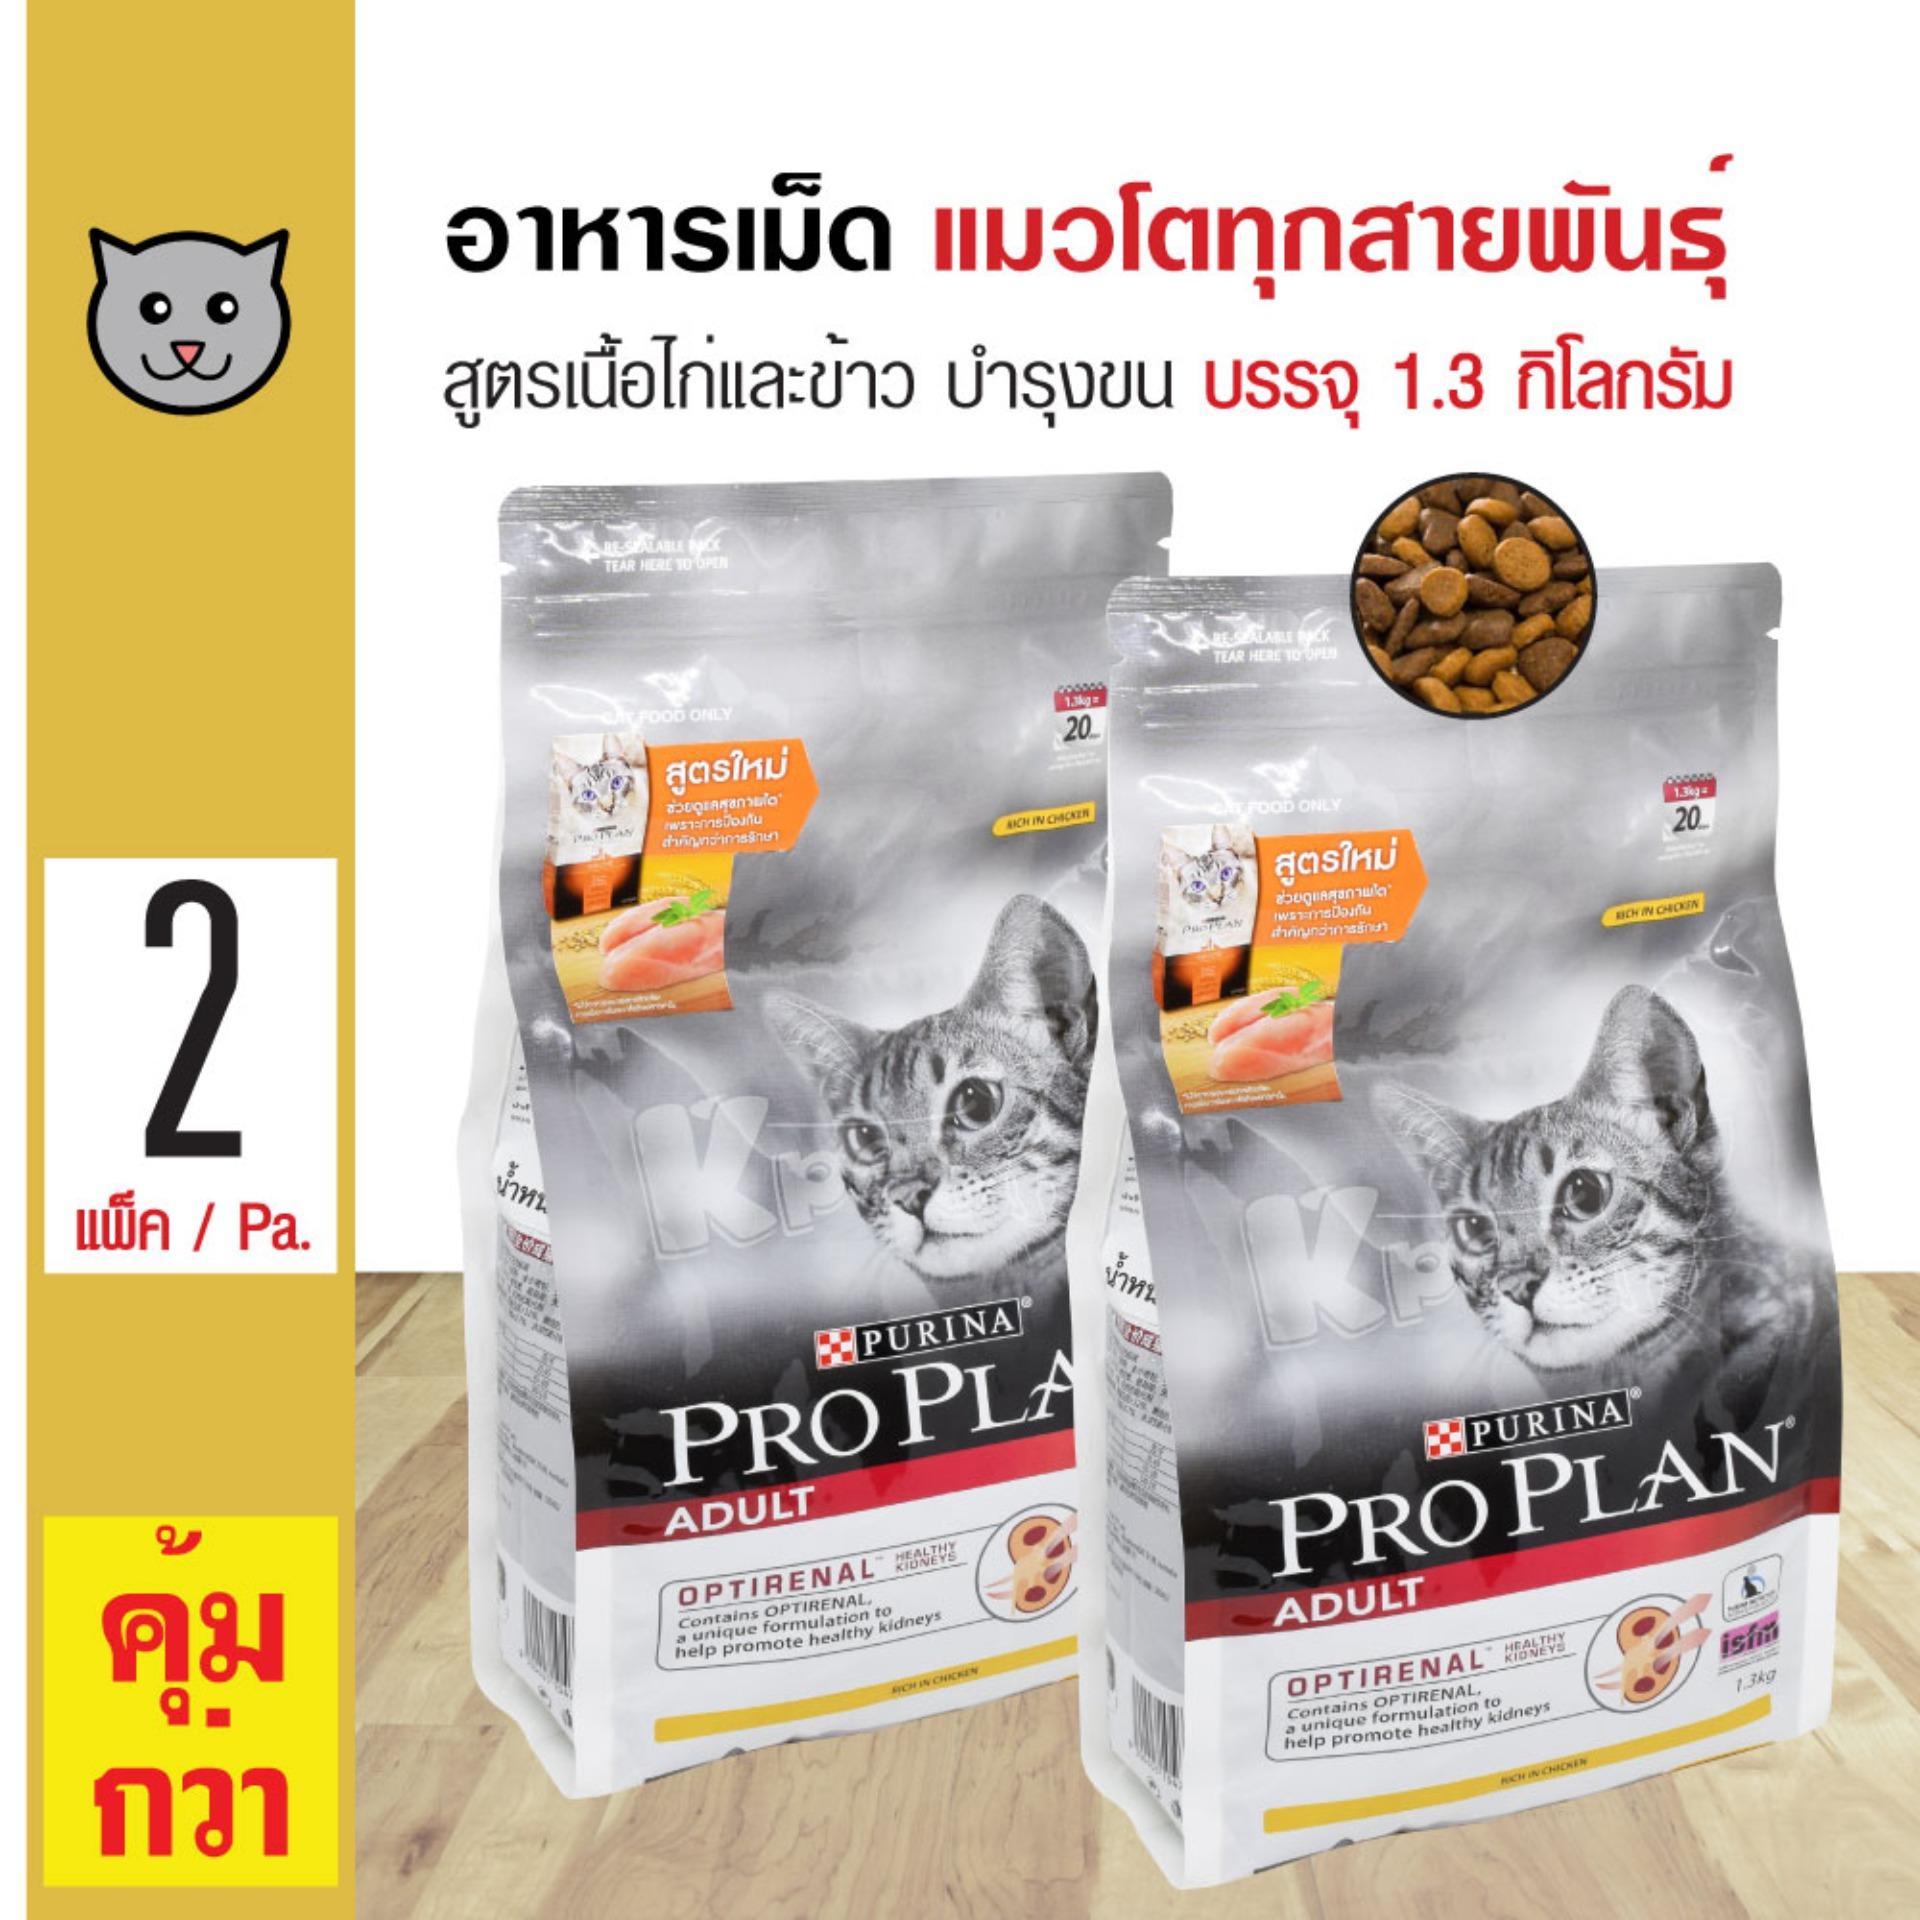 Pro Plan Chicken and Rice อาหารแมว สูตรไก่และข้าว สูตรใหม่ สำหรับแมวโตอายุ 1 ปีขึ้นไป (1.3 กิโลกรัม/ถุง) x 2 ถุง